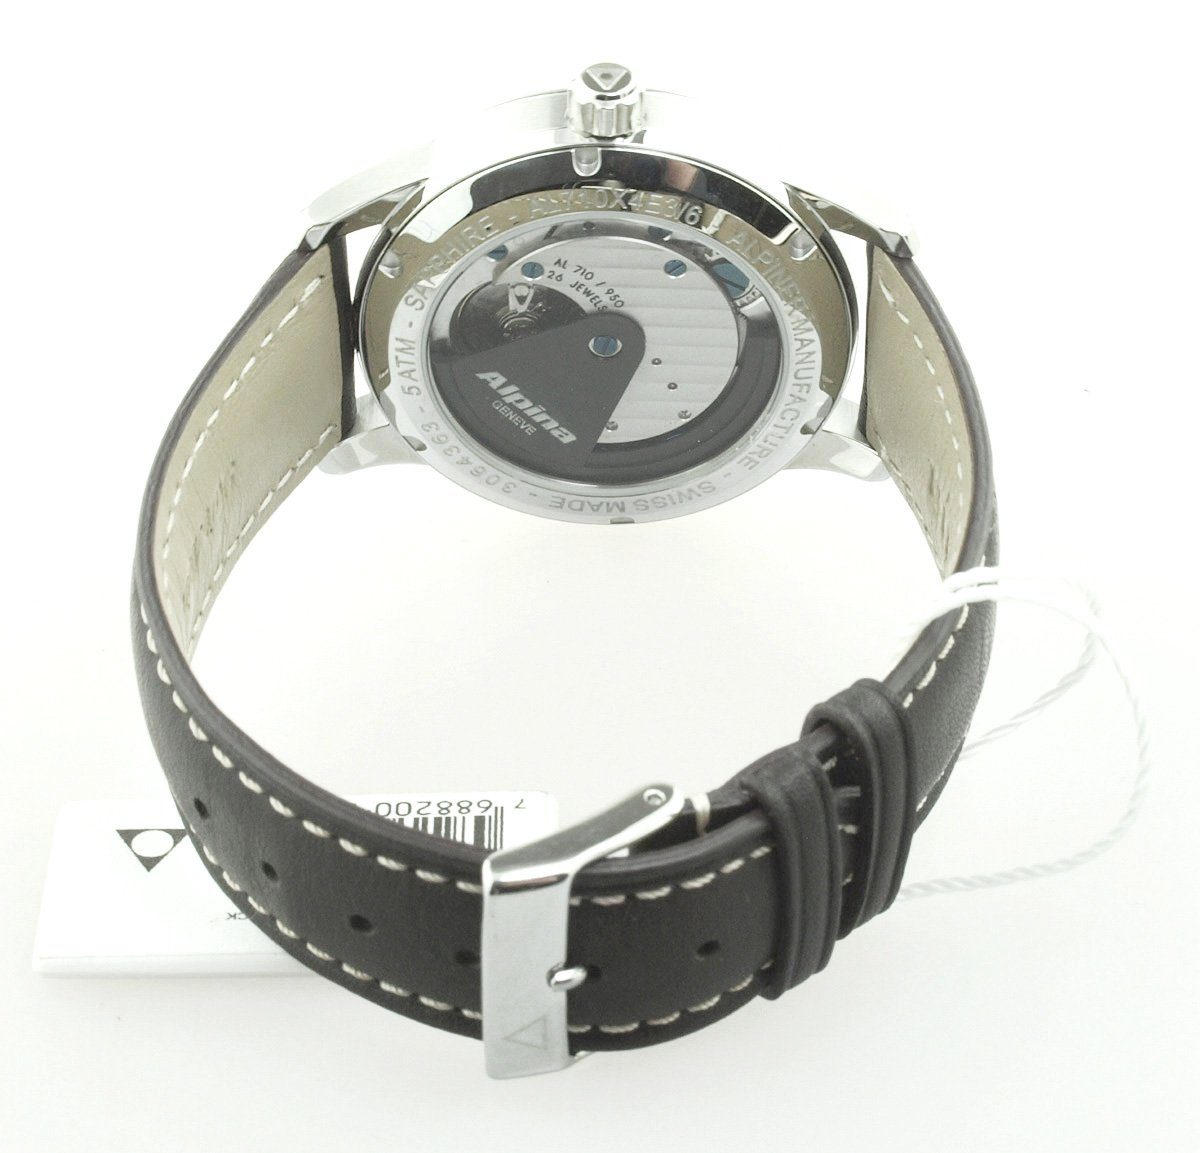 AL Automatikuhr Alpiner Schweizer AL-710S4E6 Manufactur Neu, Automatikwerk Made Watches 710 Swiss Uhr Alpina Herren Uhrwerk: